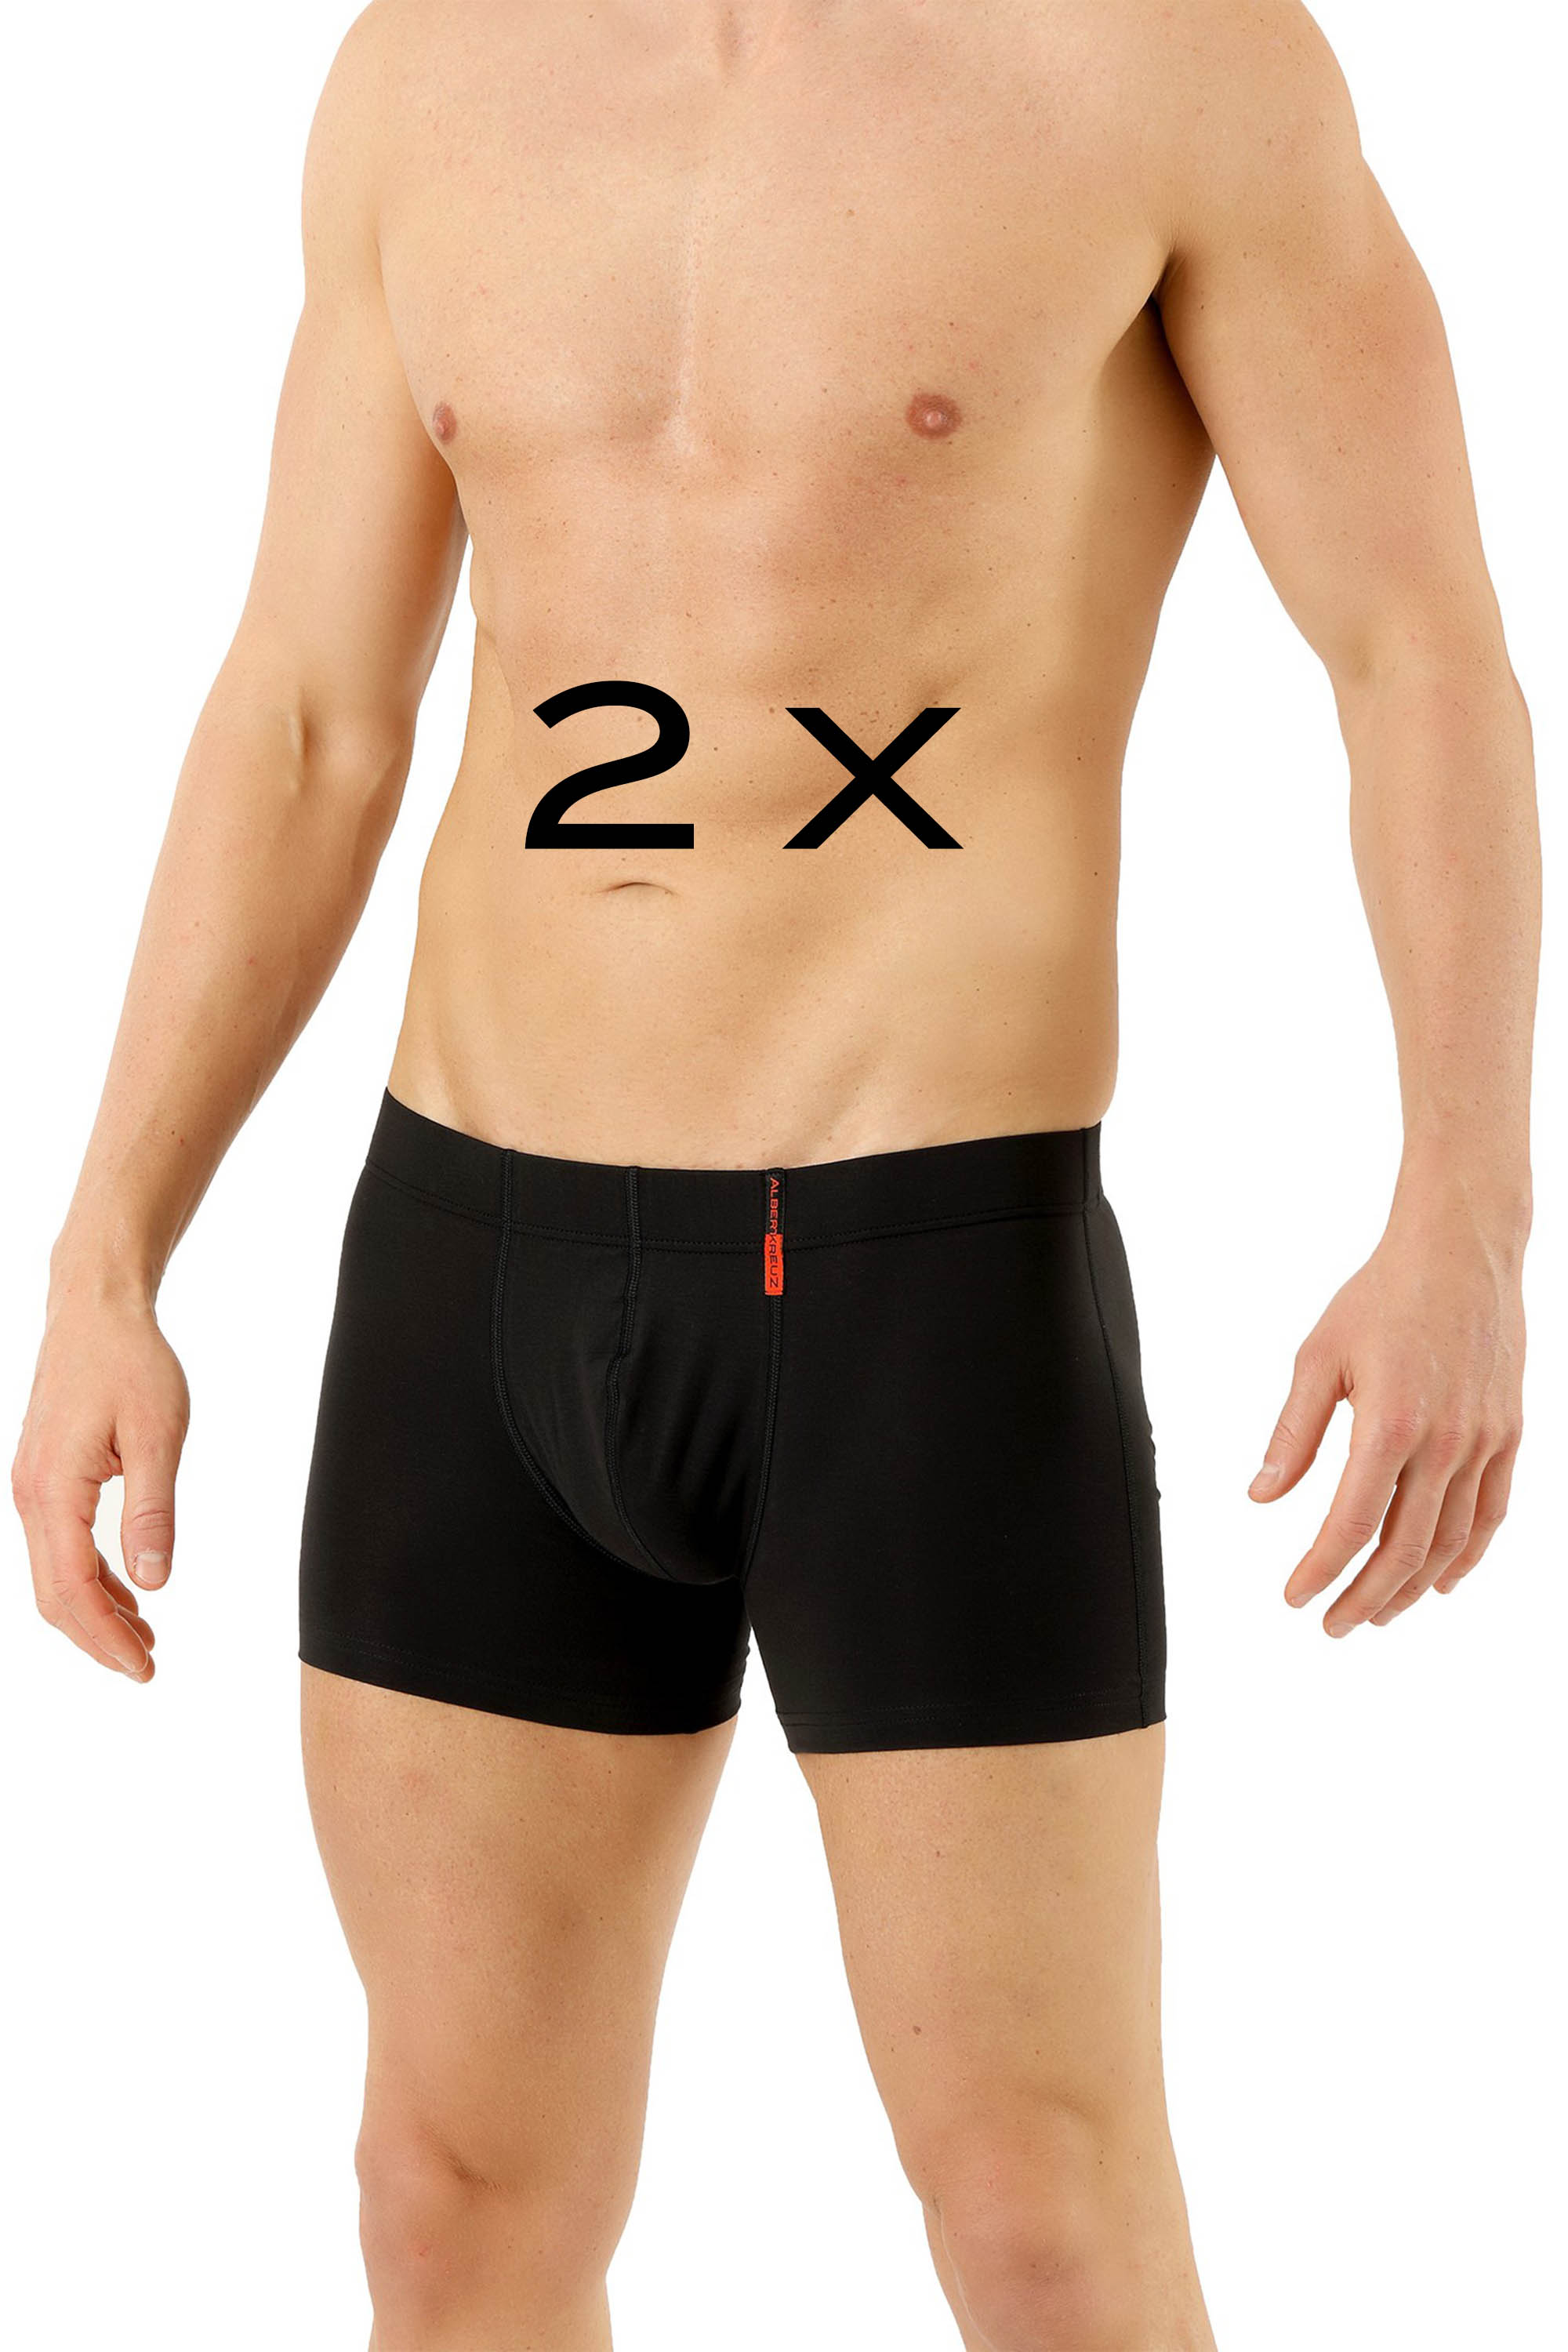 6 x Men's Woven Boxers Underwear 100% Cotton Boxer Shorts